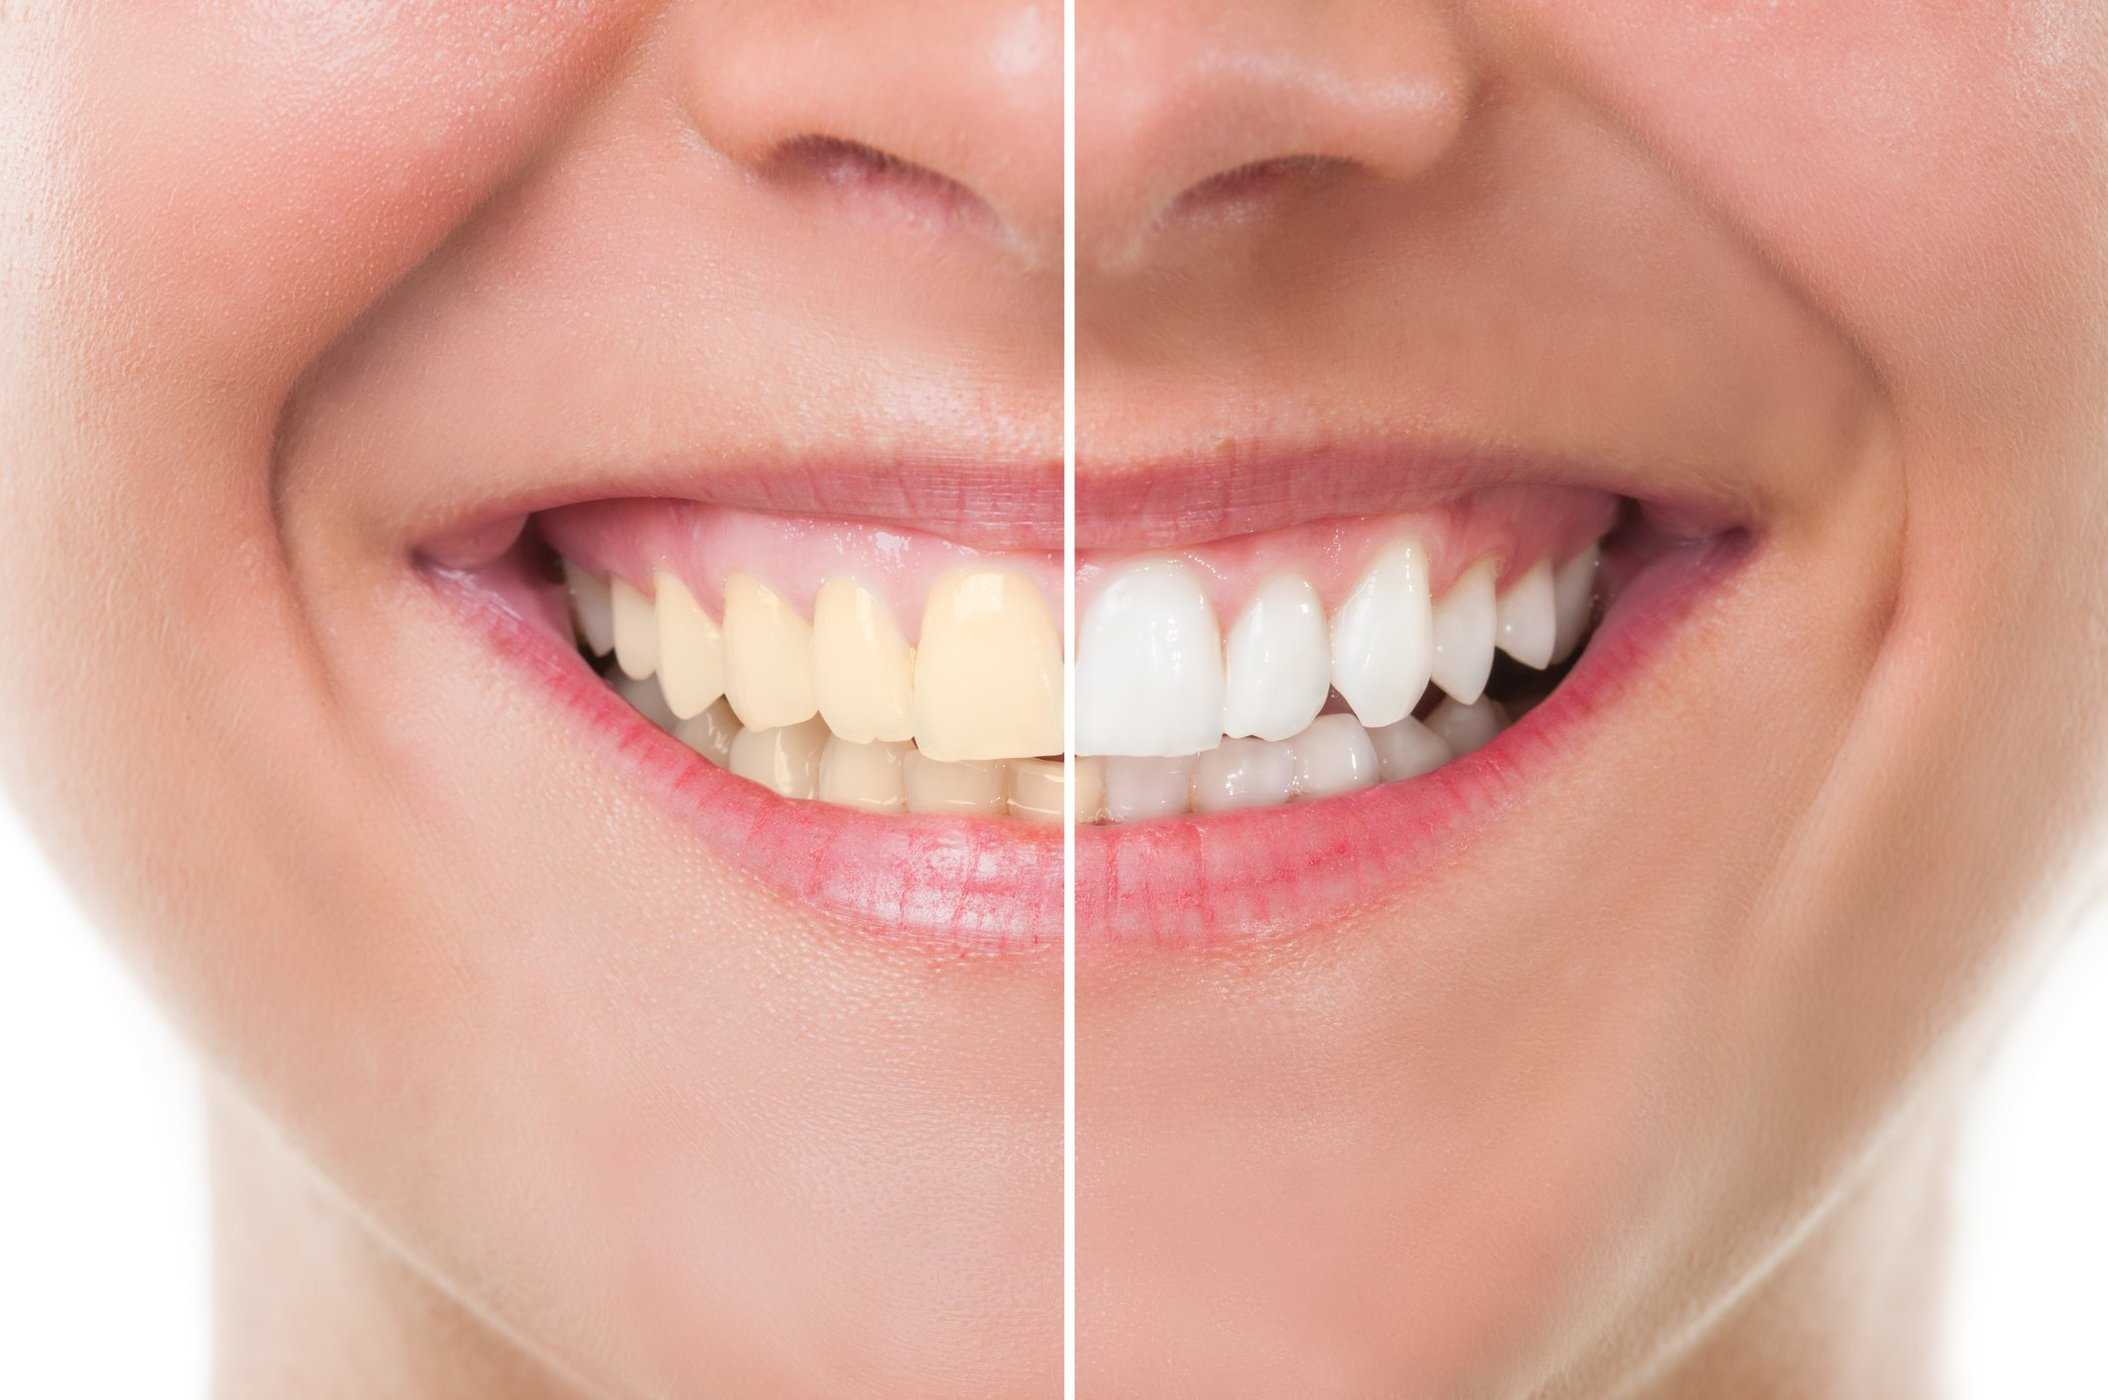 Kesan Pemutihan pada Memutihkan Gigi, Adakah yang perlu diperhatikan?